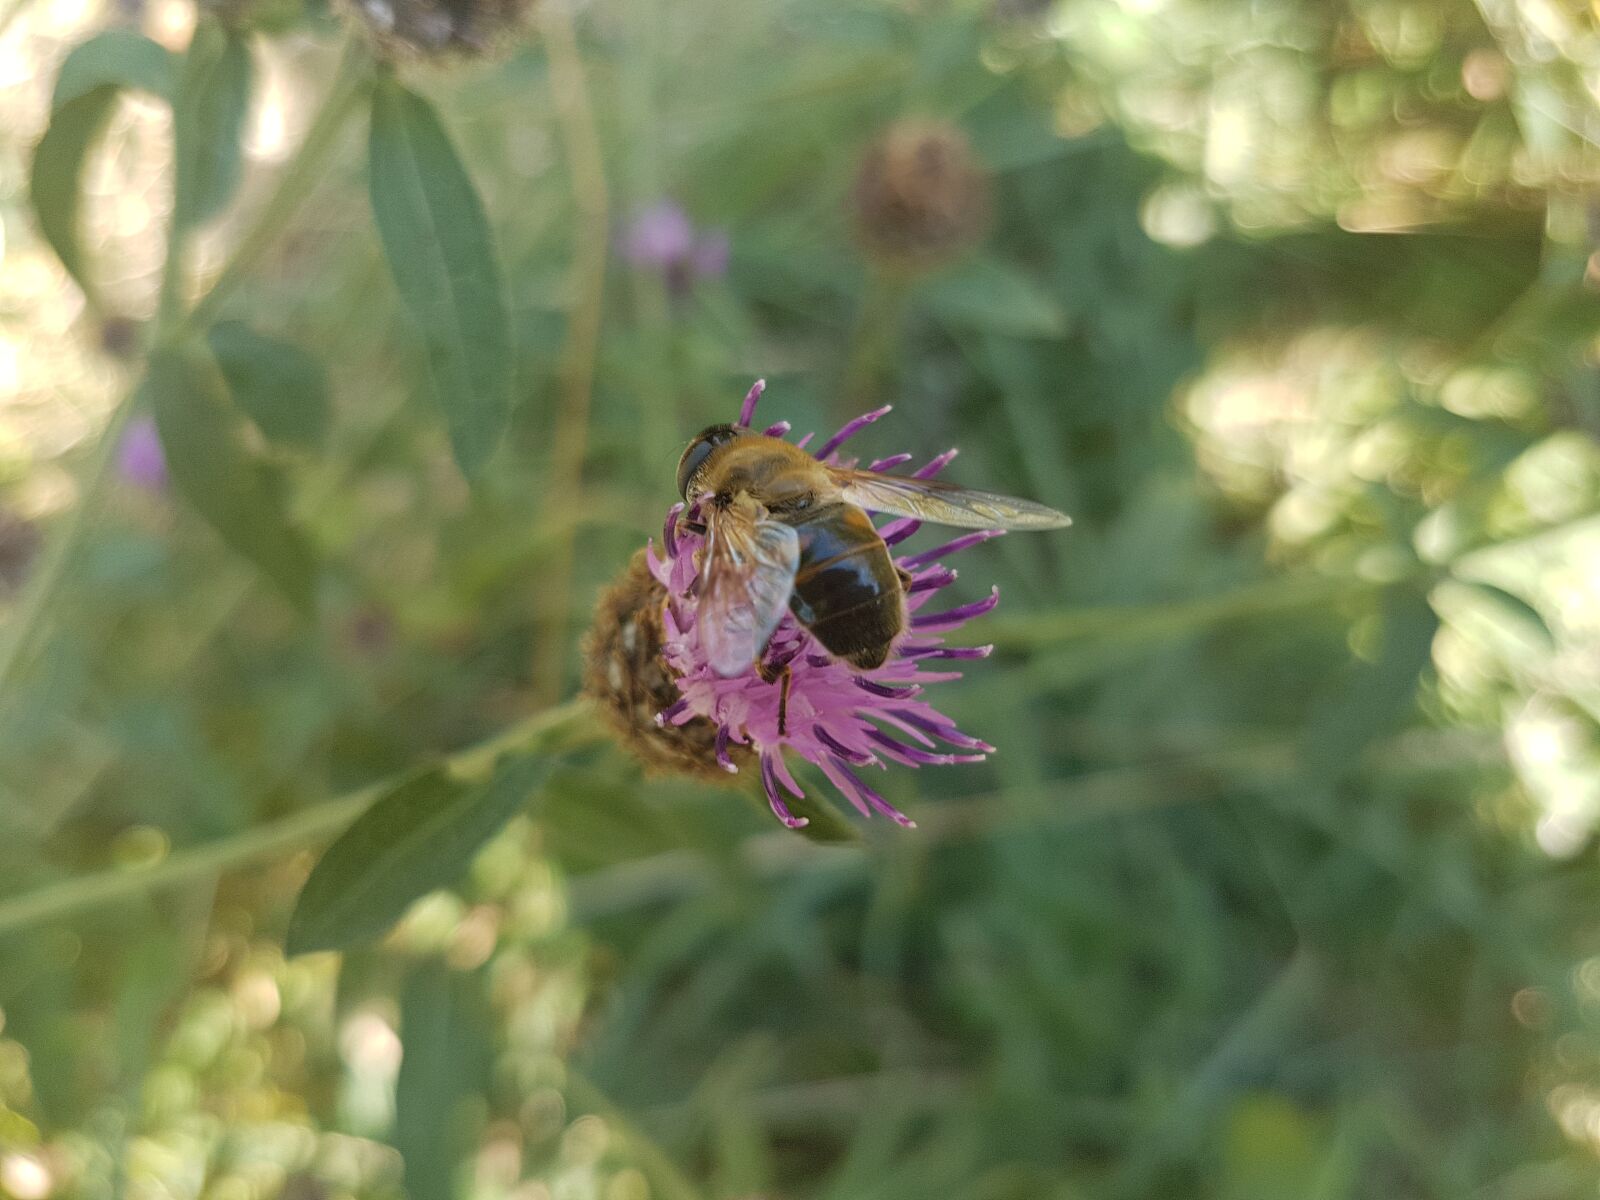 Samsung Galaxy S7 sample photo. Nature, natural, bee photography